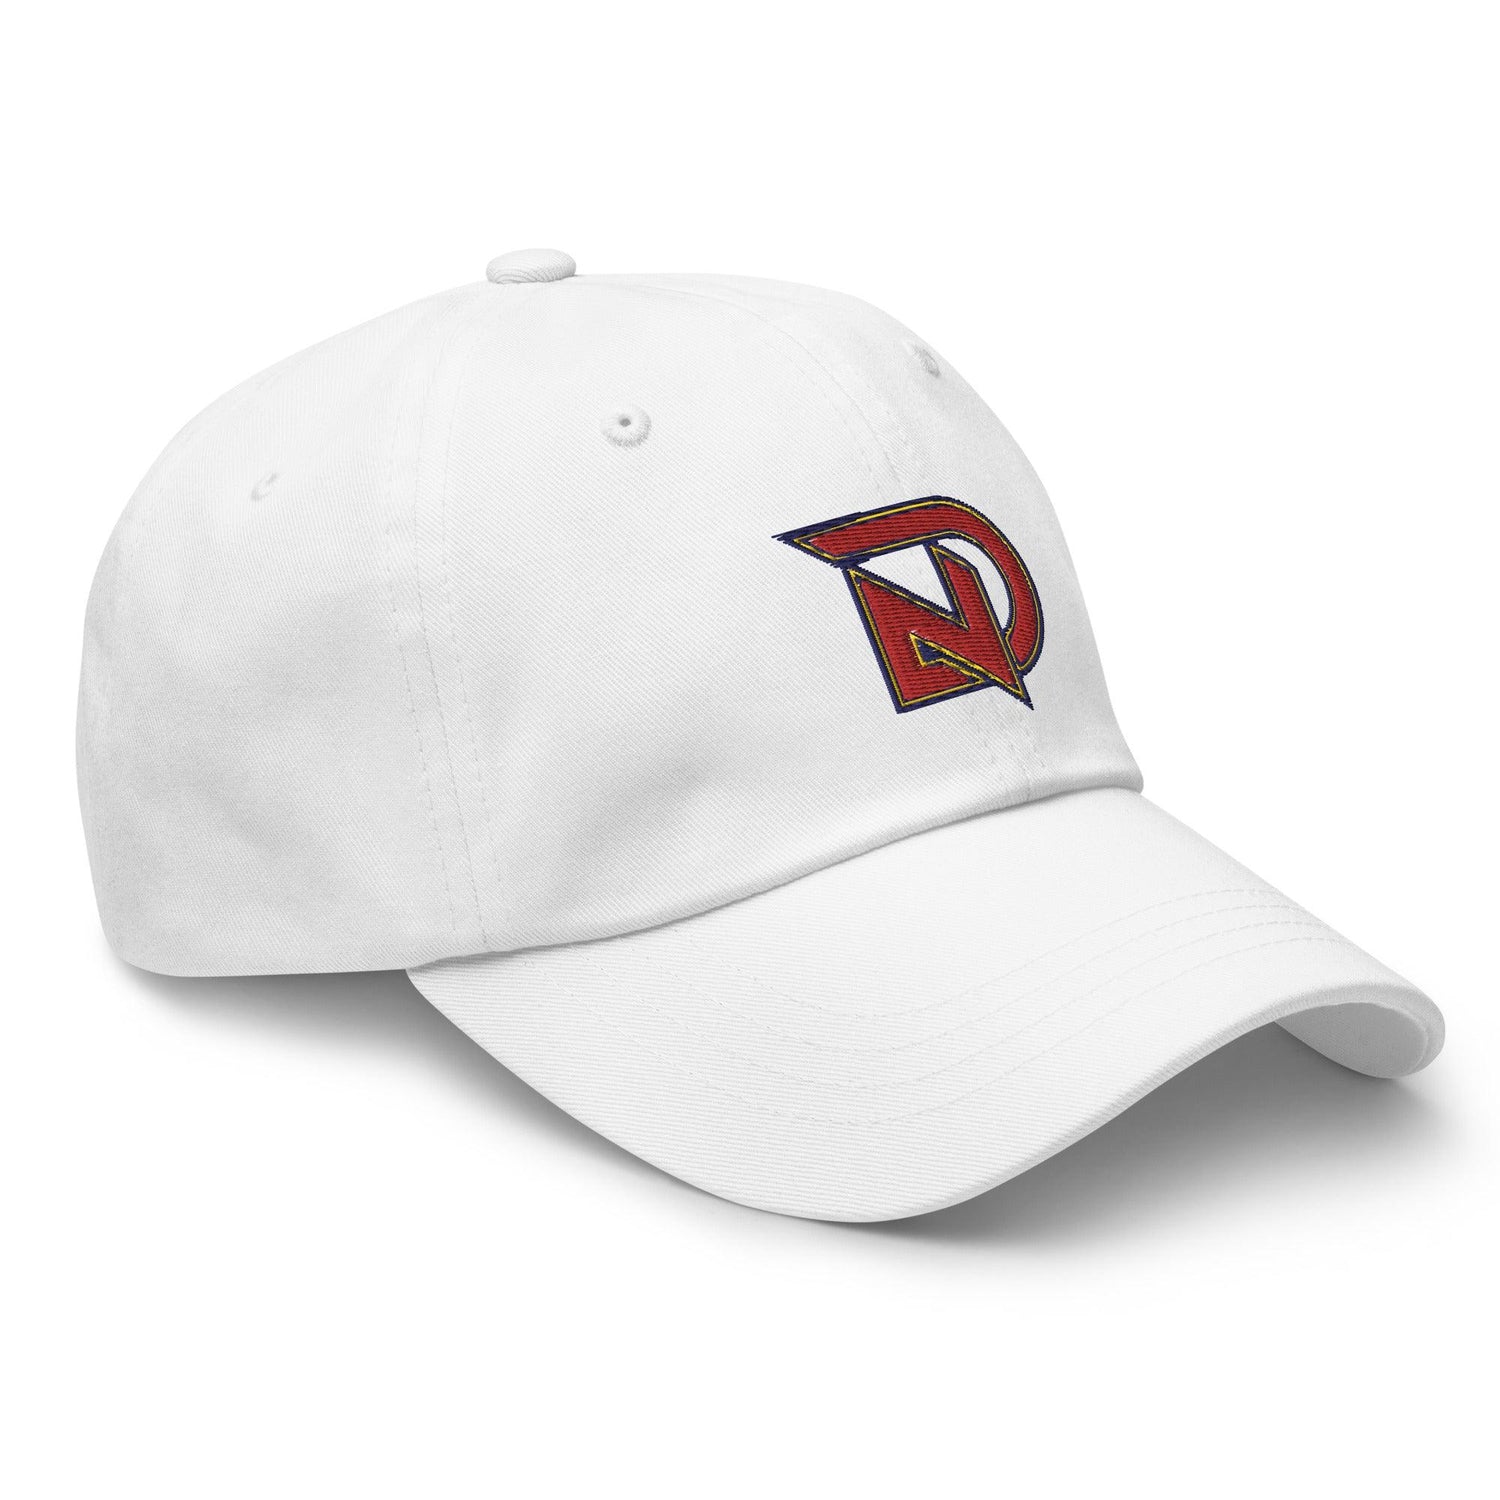 NIck Dunn "Elite" hat - Fan Arch